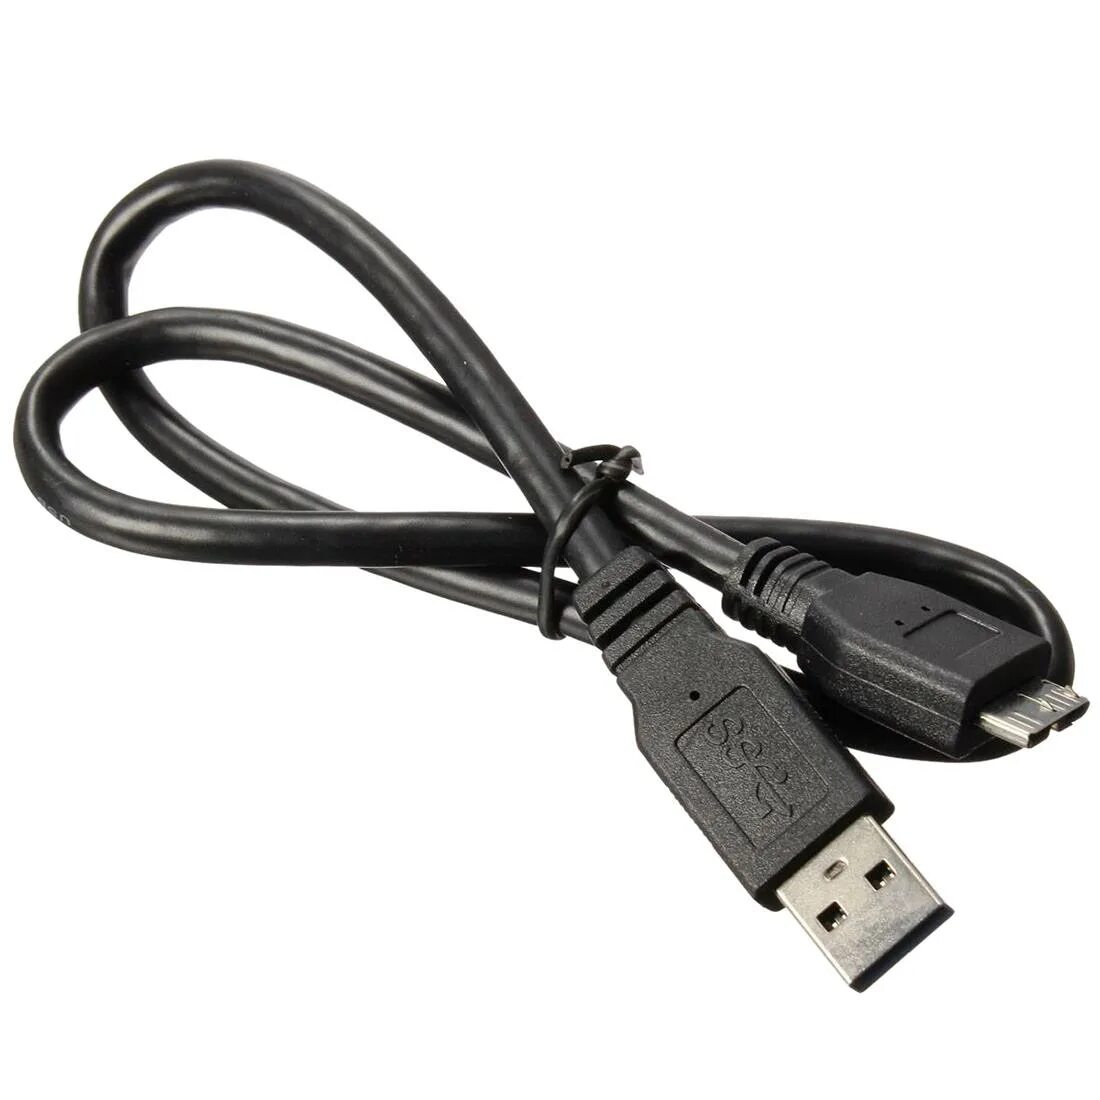 Куплю внешний кабель. Жесткий диск провод юсб 3.0. USB 3.0 Cable Micro-b. Кабель для внешнего жесткого диска Micro-b-USB3.0. Кабель USB - MINIUSB для внешнего жёсткого диска.